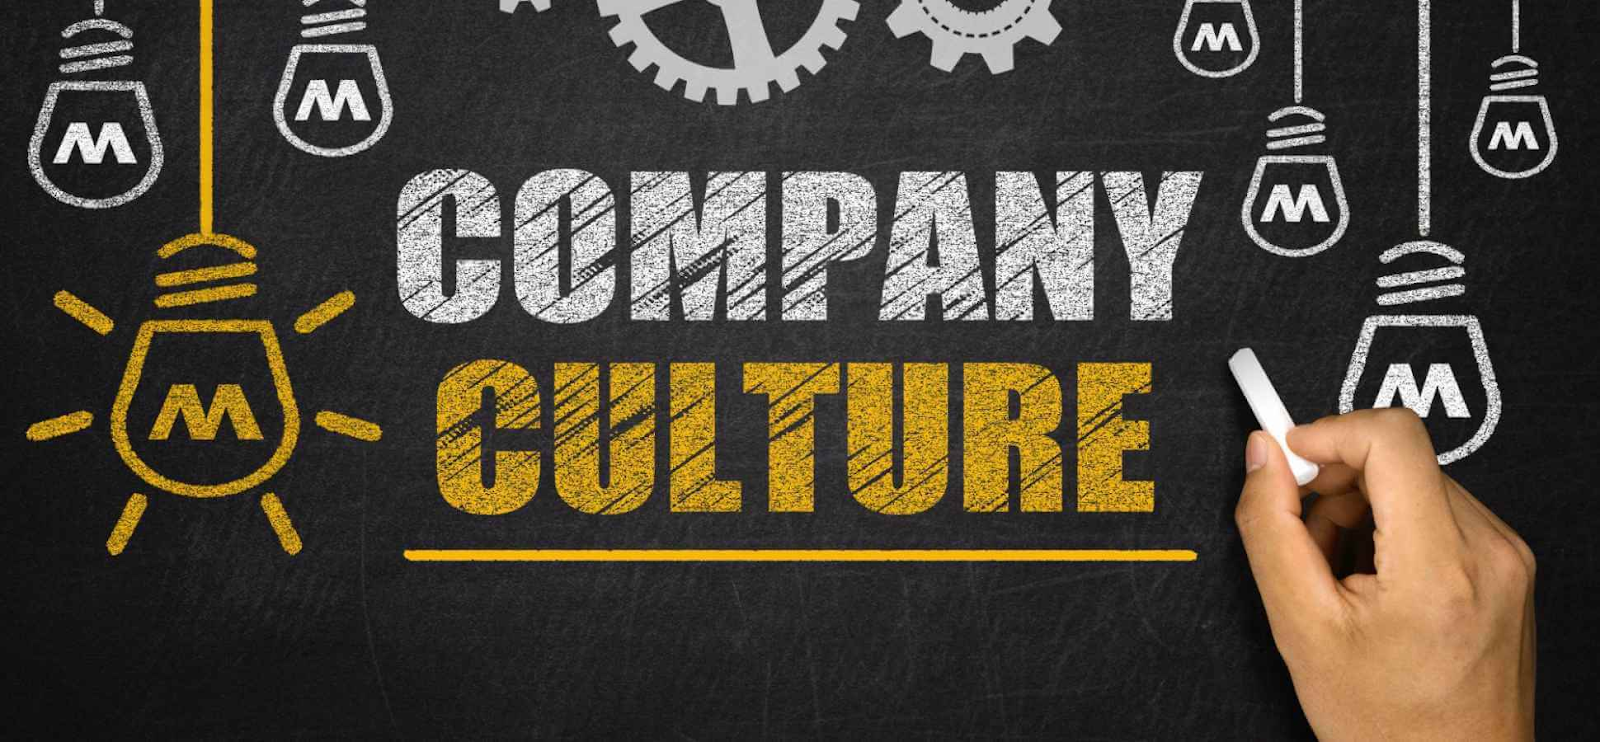 Văn hoá công ty là một phần quan trọng (Nguồn ảnh: Kelsey Consulting M&A)